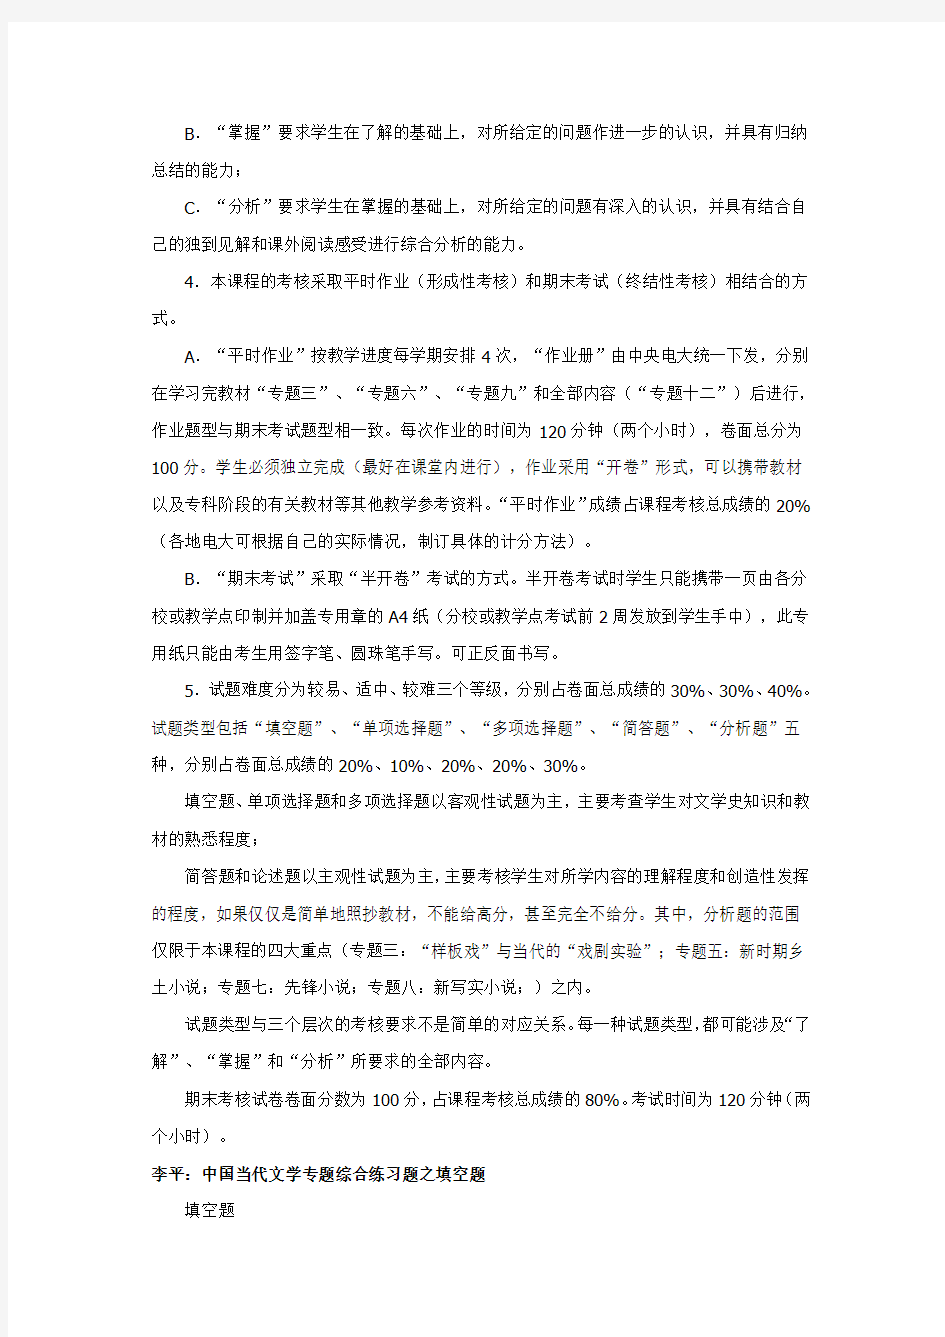 (2011.06.14)中国当代文学专题期末复习指导(文本)